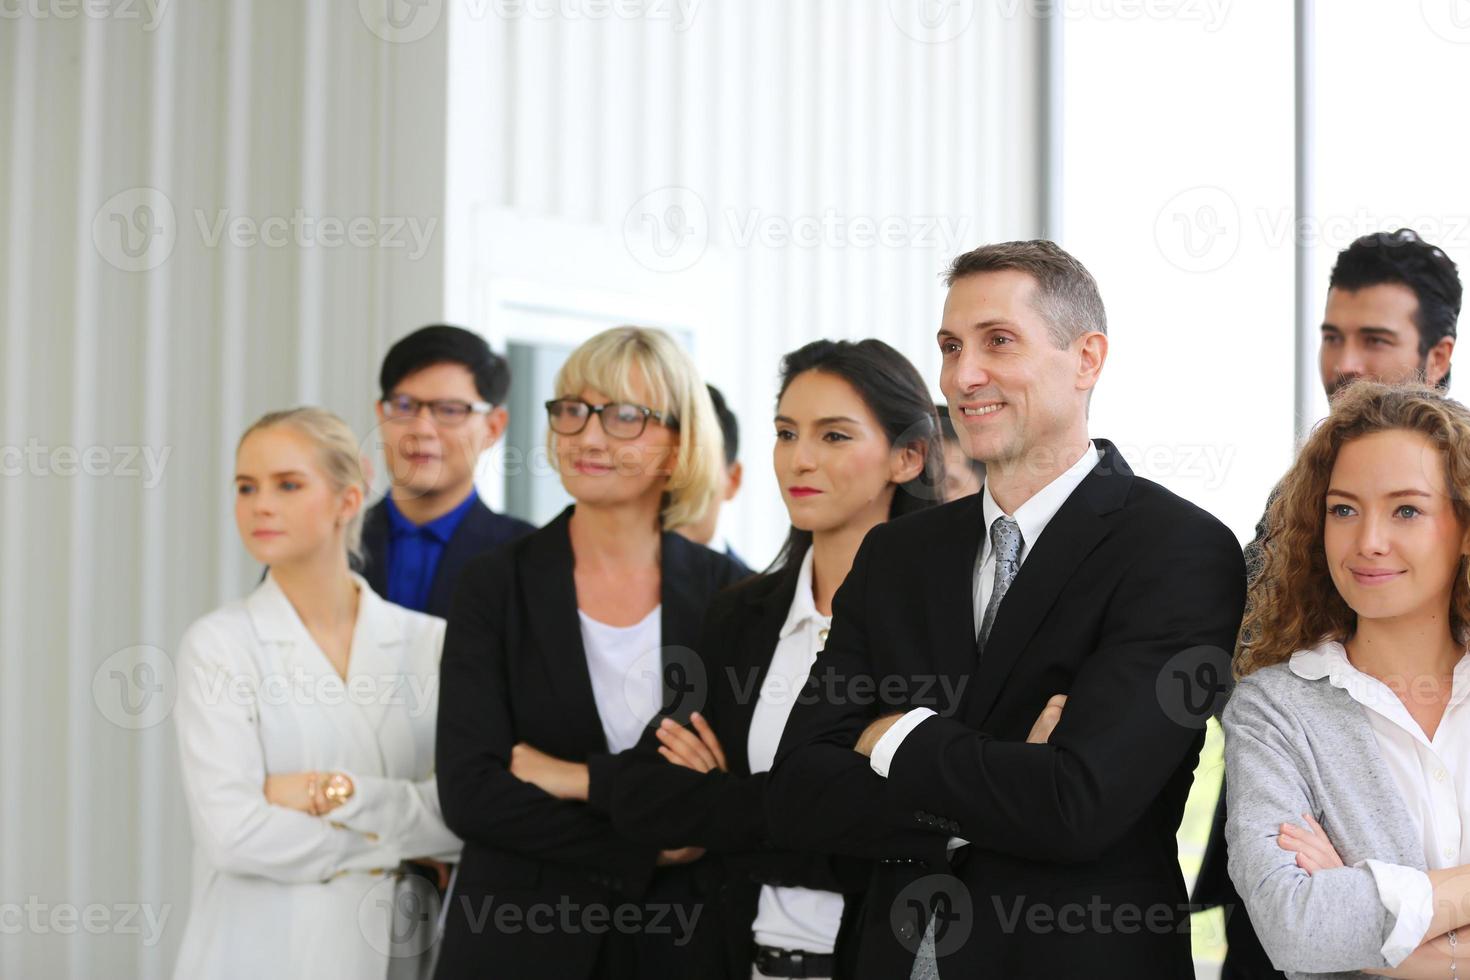 succesvolle zakenmensen die samen staan, verbreden zich en tonen een sterke relatie van de arbeidersgemeenschap. een team van zakenman en zakenvrouw die een sterk groepswerk uitdrukken op het moderne kantoor. foto